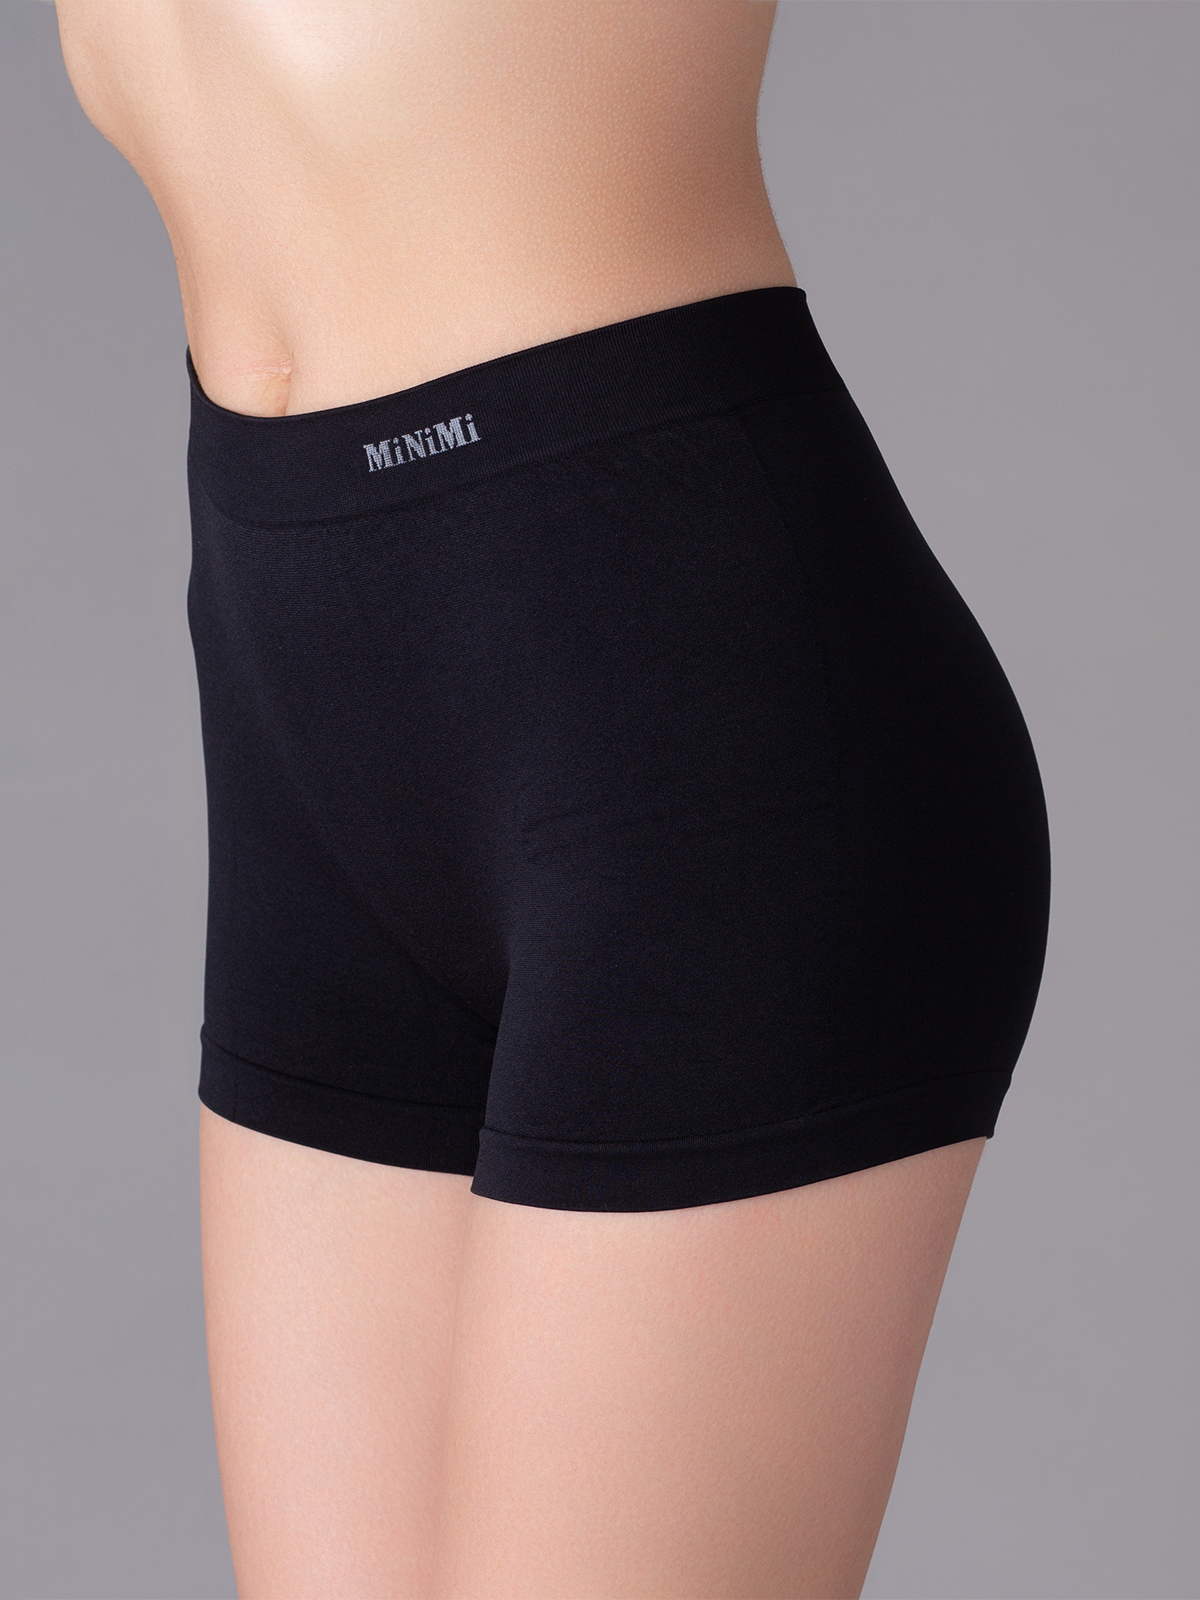 Трусы женские Minimi MA 270 shorts черные L/XL